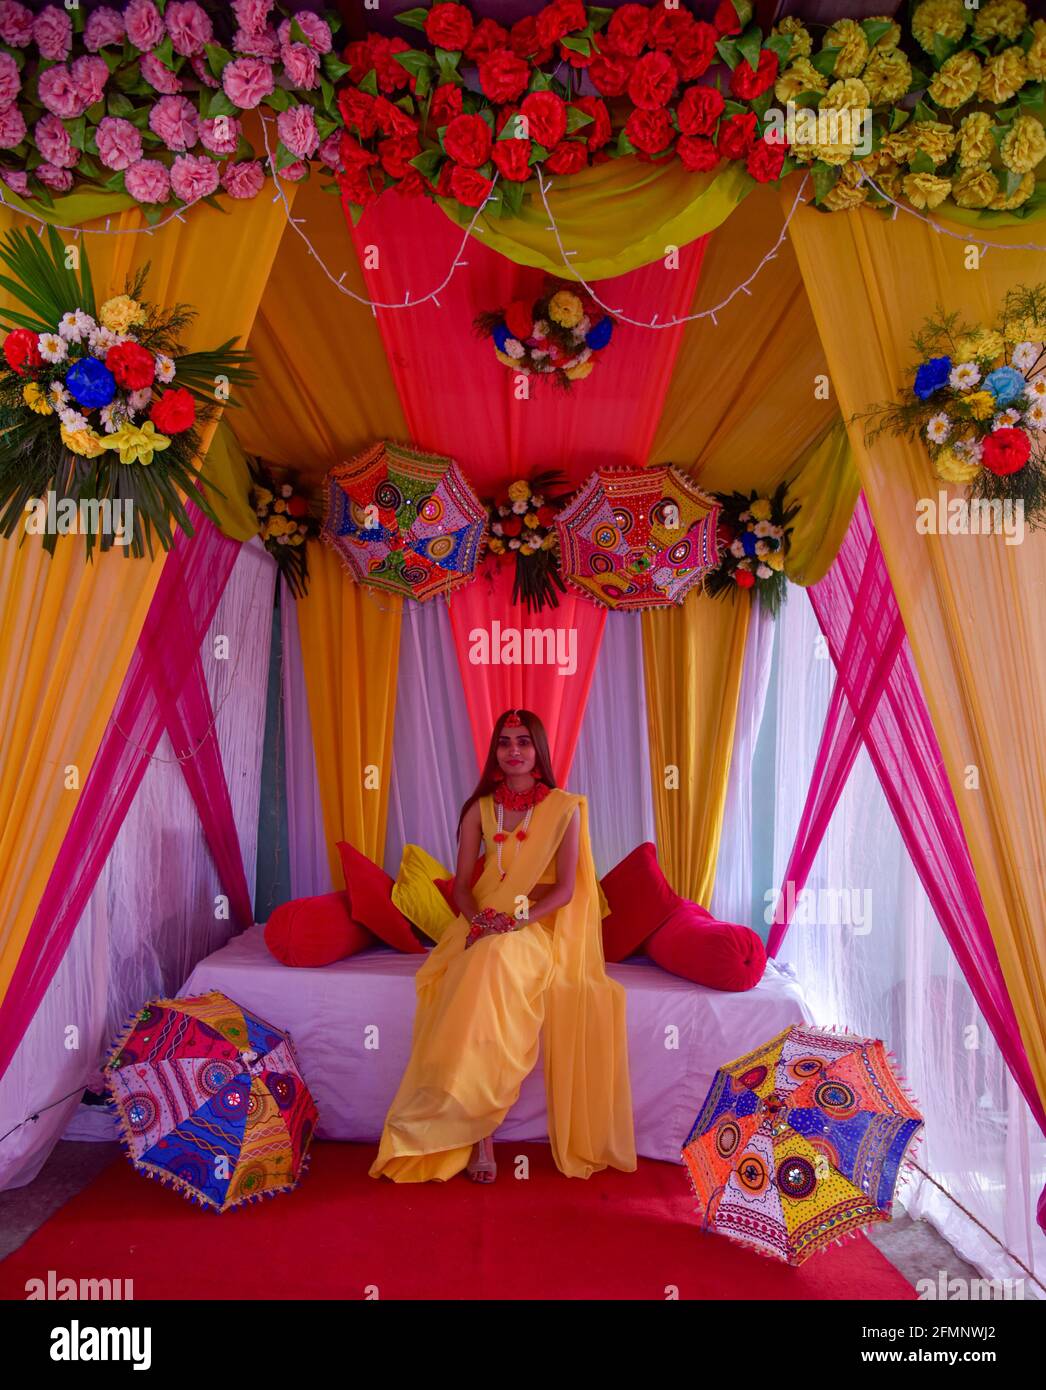 Porträt der schönen indischen Braut auf ihrer Hochzeit. Stockfoto